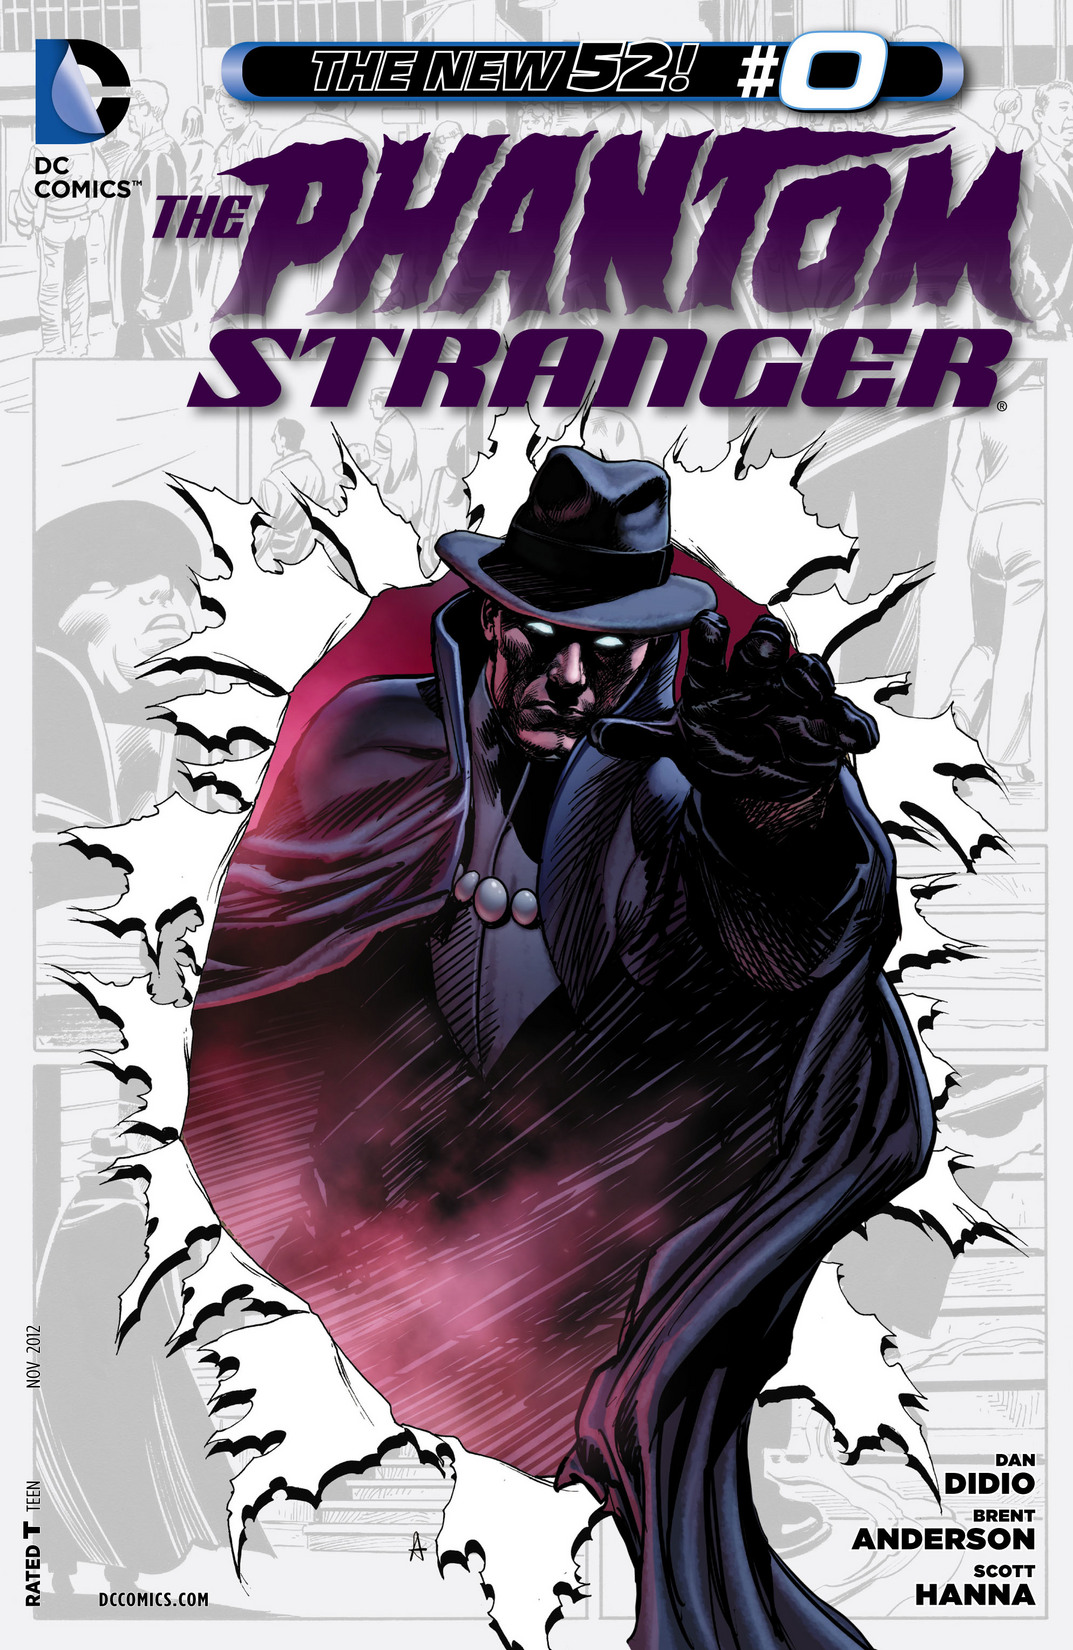 Phantom Stranger #5